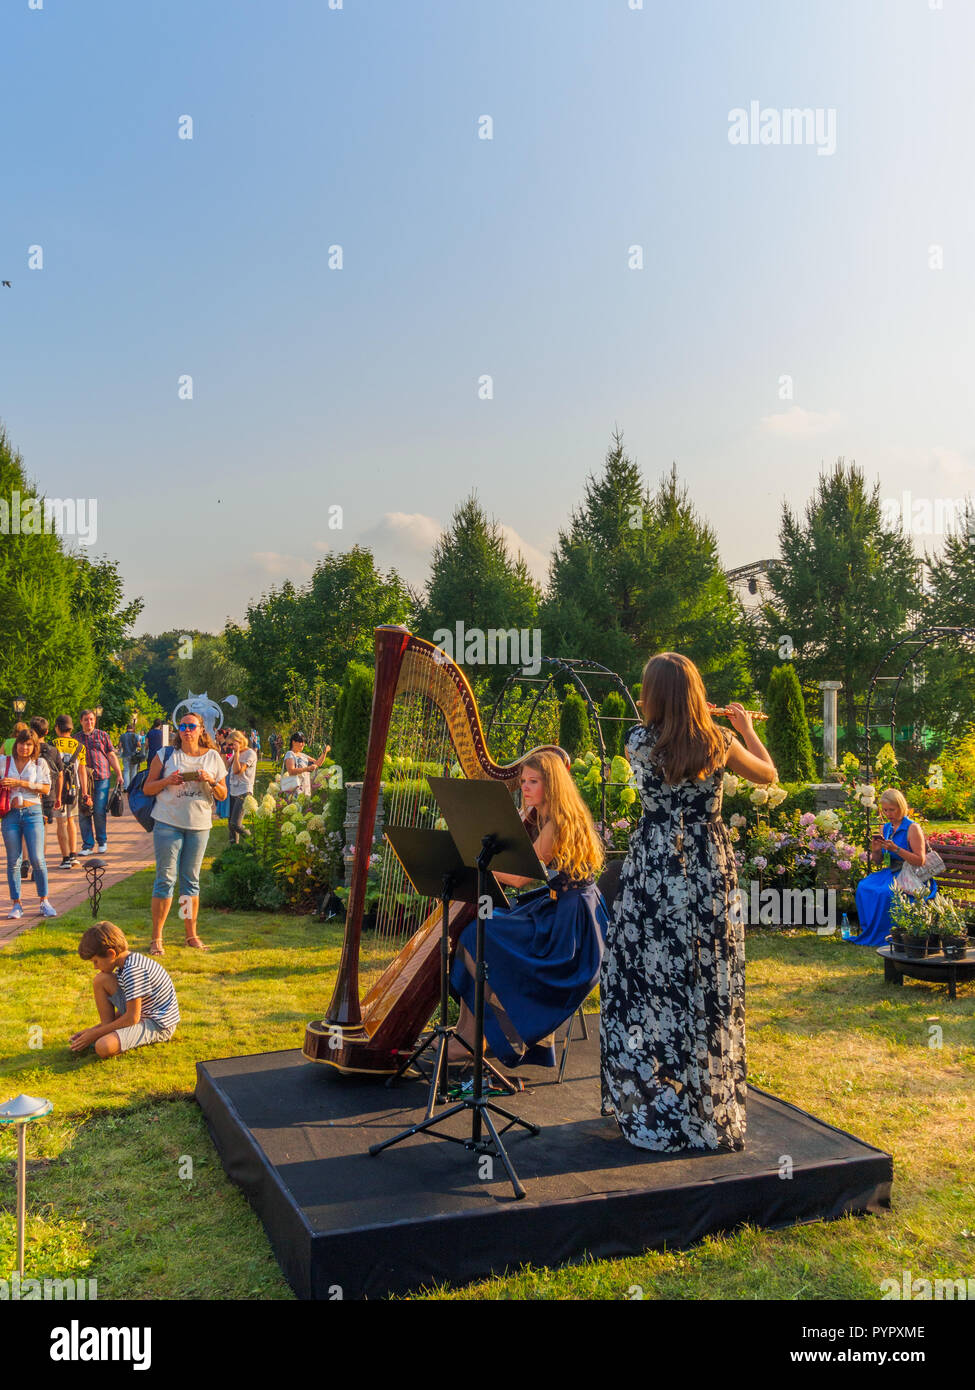 Mosca, Russia - 31 agosto 2018: architettura del paesaggio e del giardino festival presso il parco Kuskovo. Foto Stock